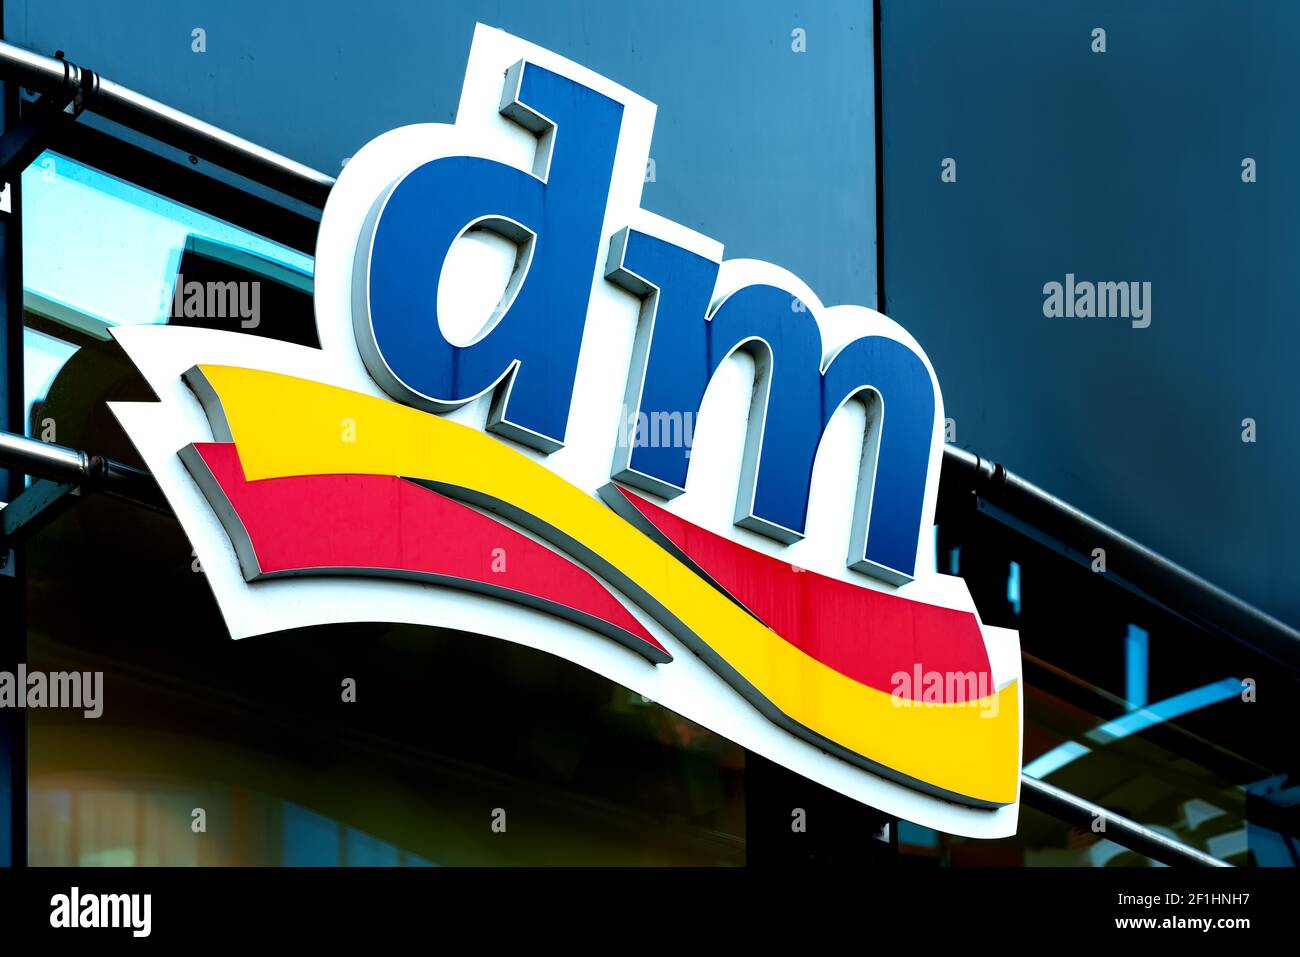 dm-Logo an der Wand. dm-drogerie markt ist eine Kette von Einzelhandelsgeschäften, die Kosmetika, Gesundheitsartikel, Haushaltsprodukte und Gesundheitsnahrung verkauft Stockfoto